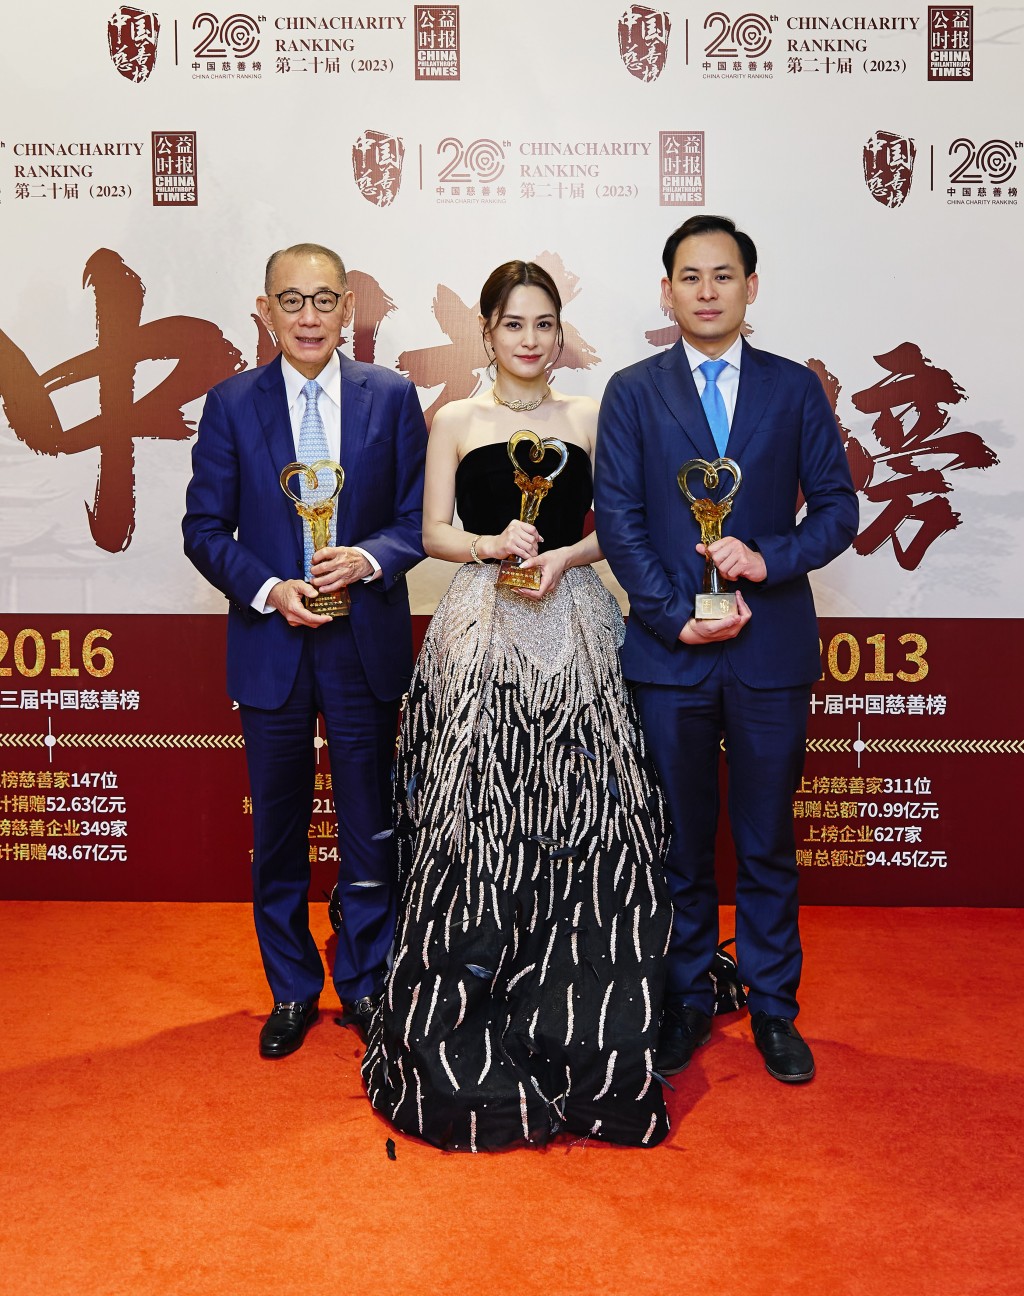 英皇集团主席杨受成博士（左）、集团副主席杨政龙及英皇娱乐艺人锺欣潼赴北京出席《第二十届中国慈善榜》，并分别获颁慈善表彰。